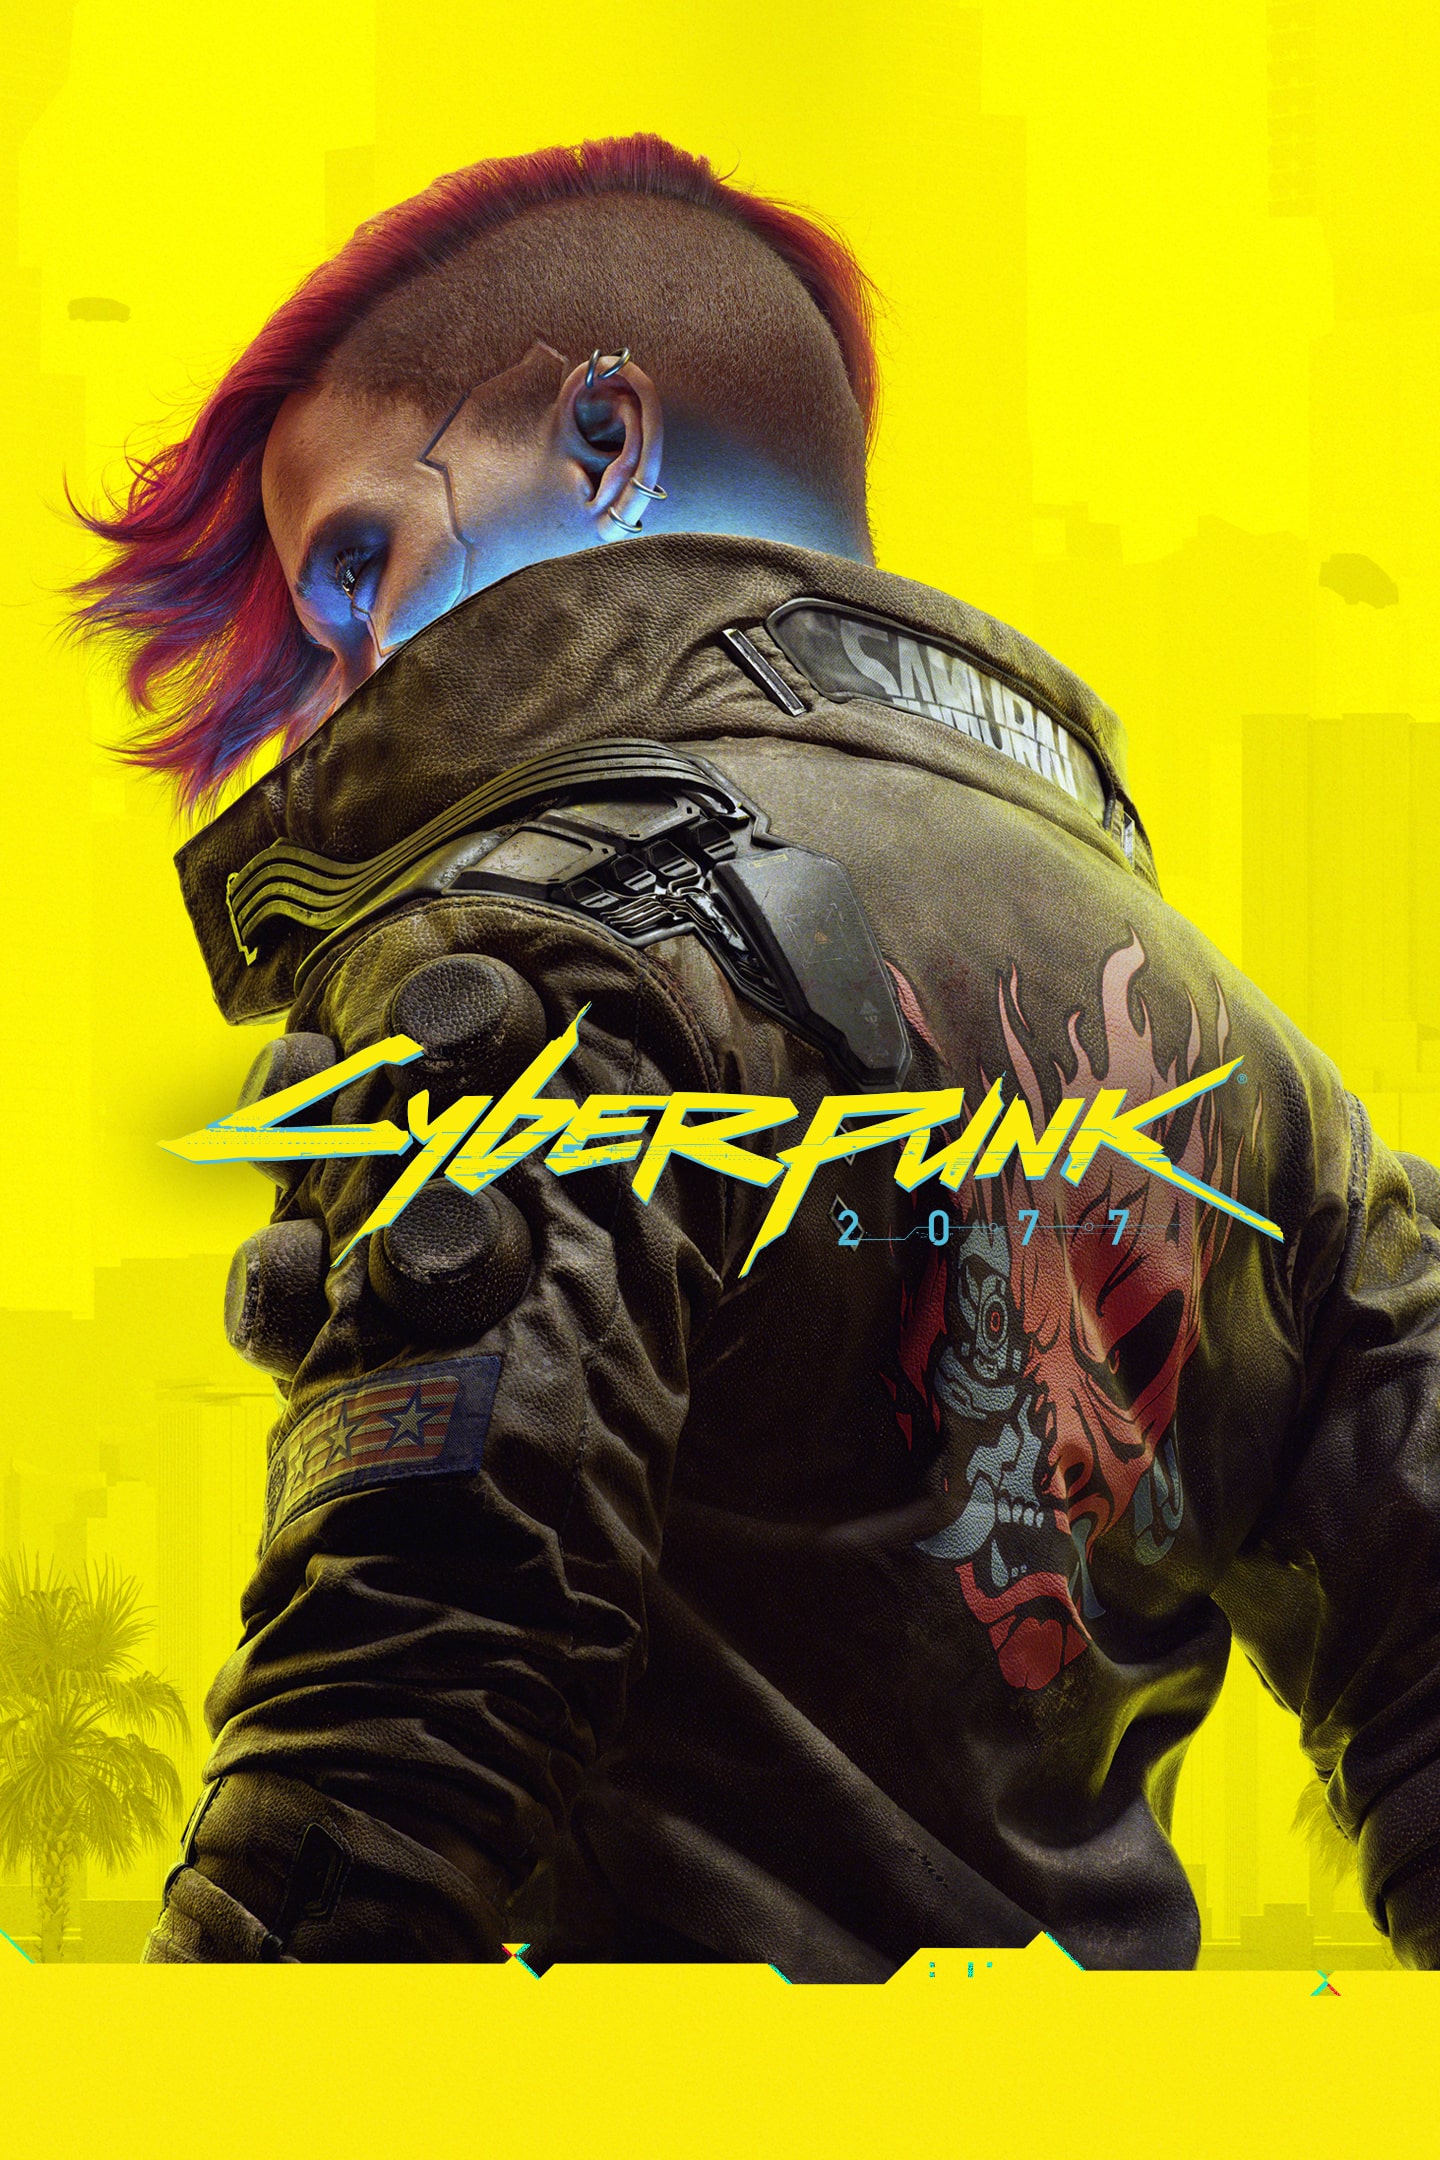 Cyberpunk 2077 aparece ya en la PlayStation Store de PS5 y el 21